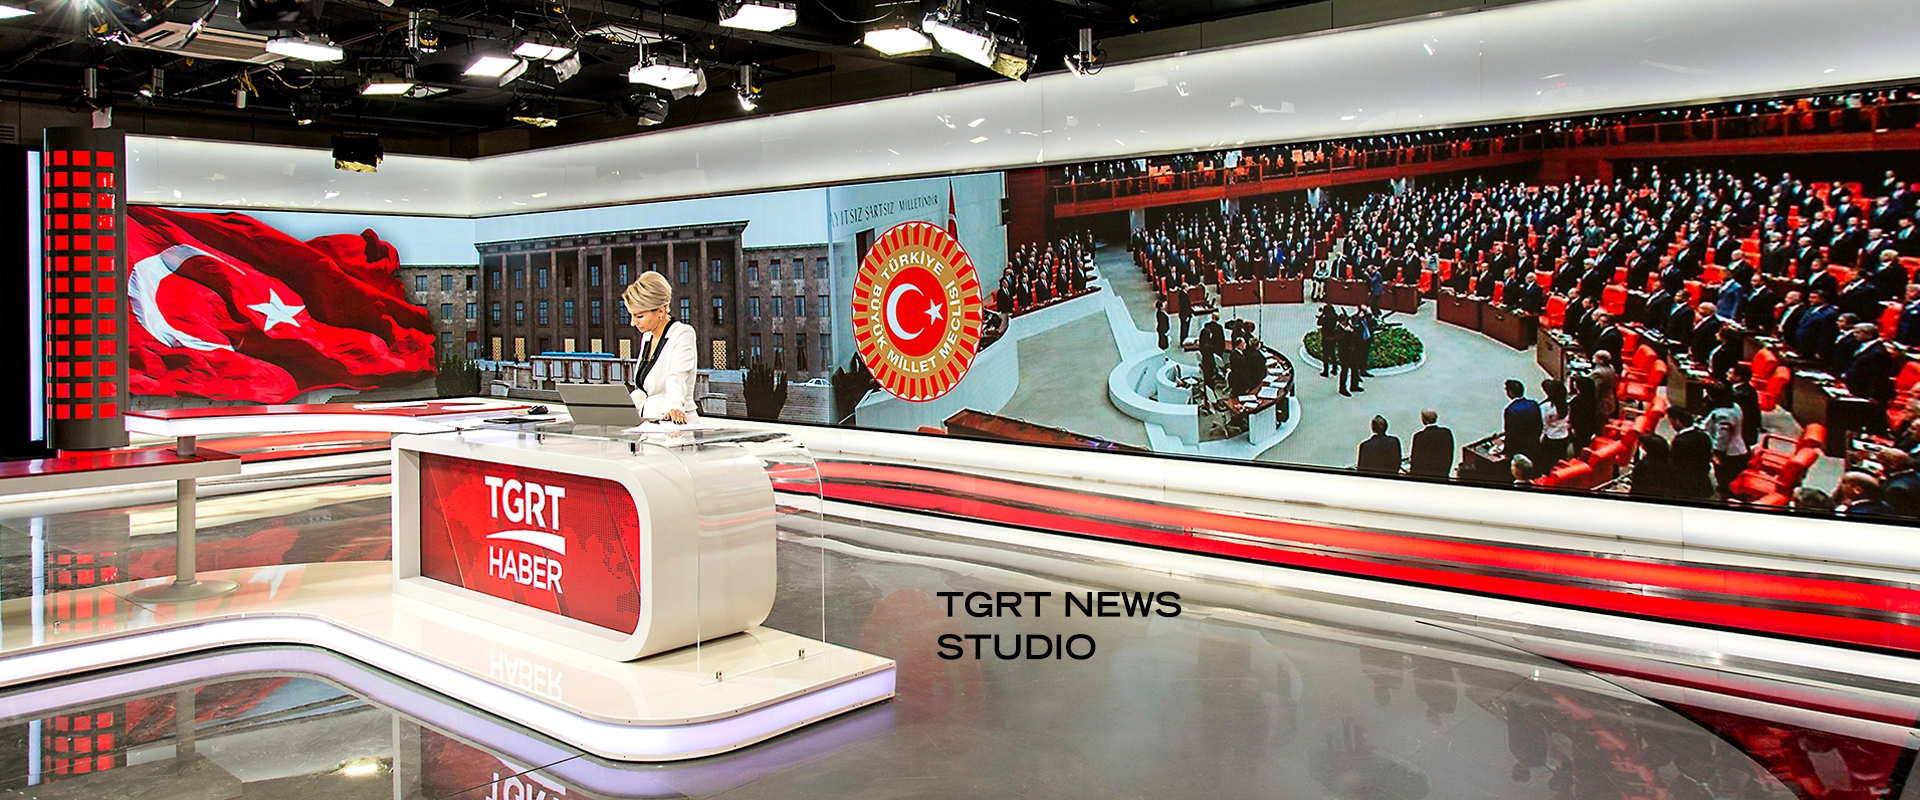 Taglig, TGRT News Studio